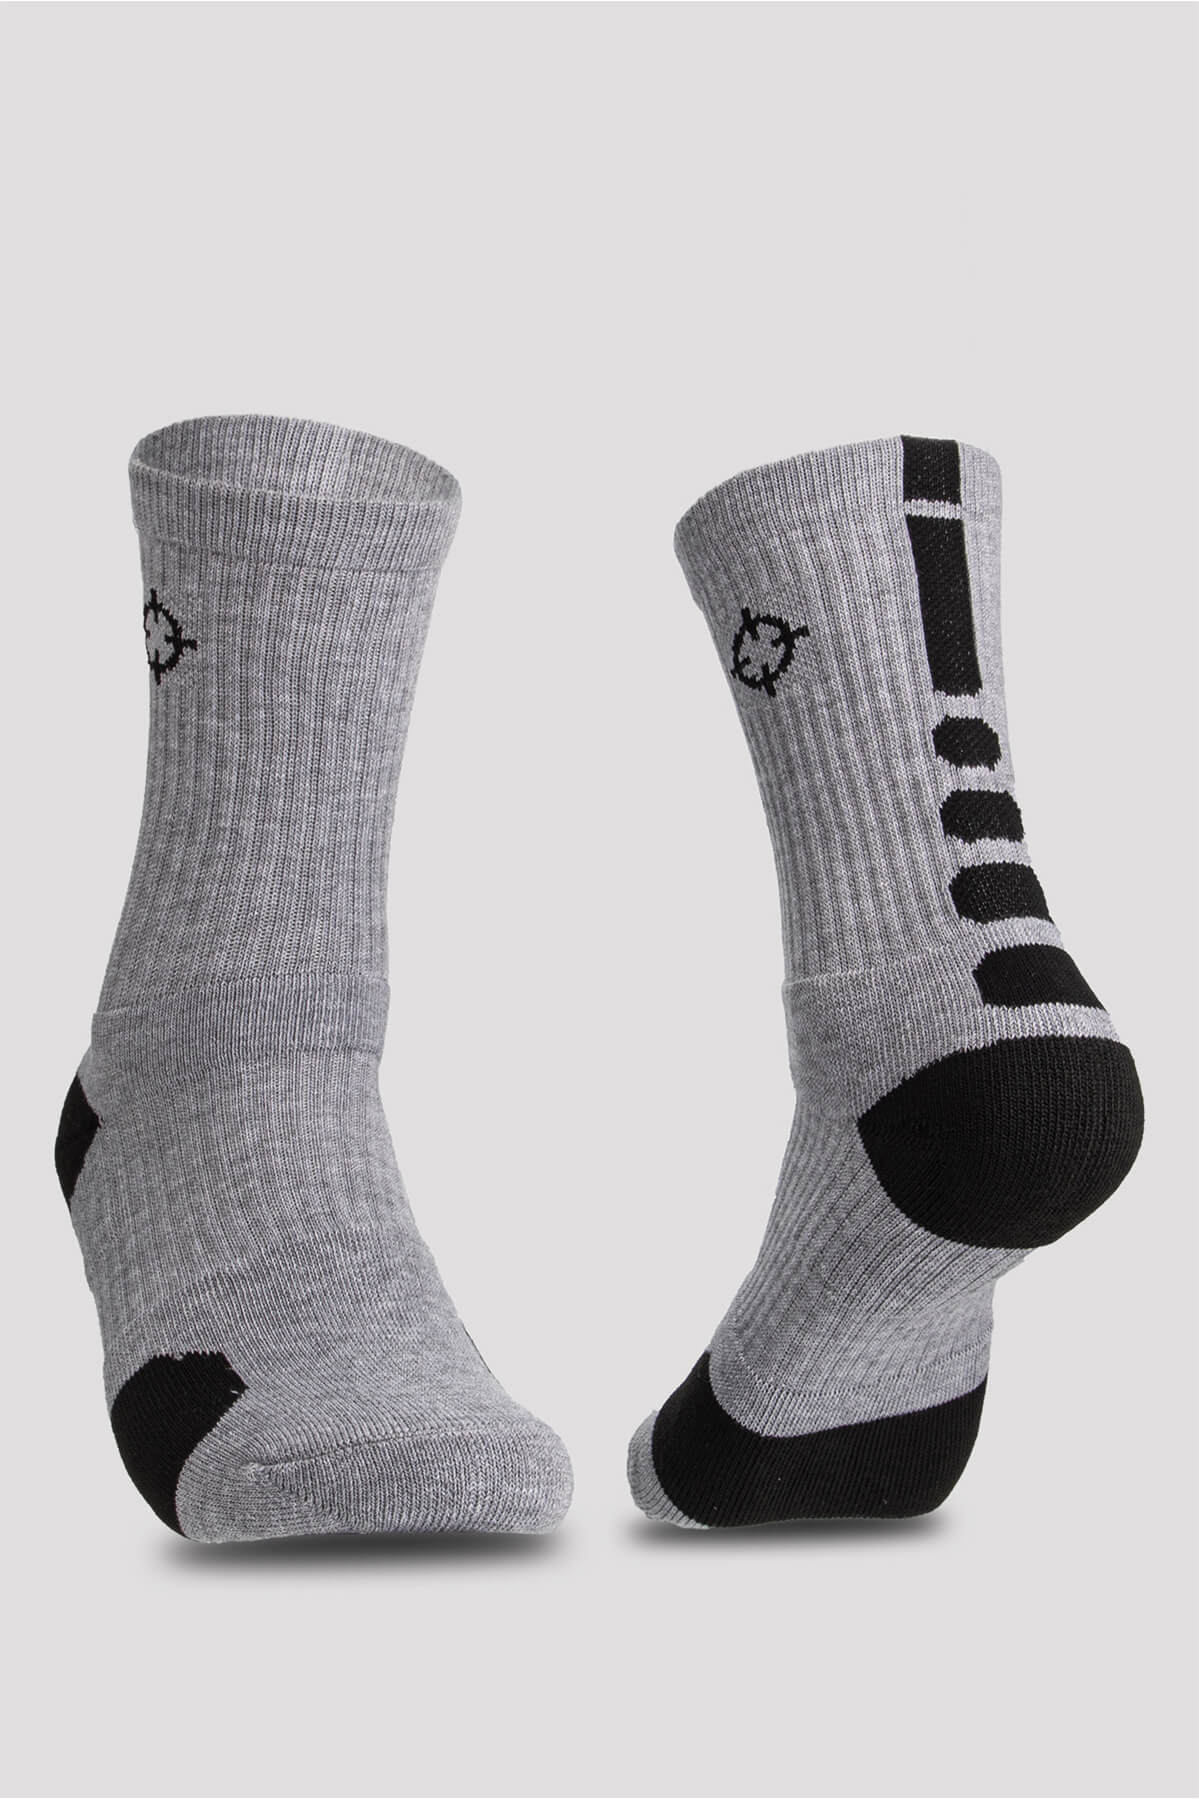 Grey/Black|Rigorer Crew Socks [S04]